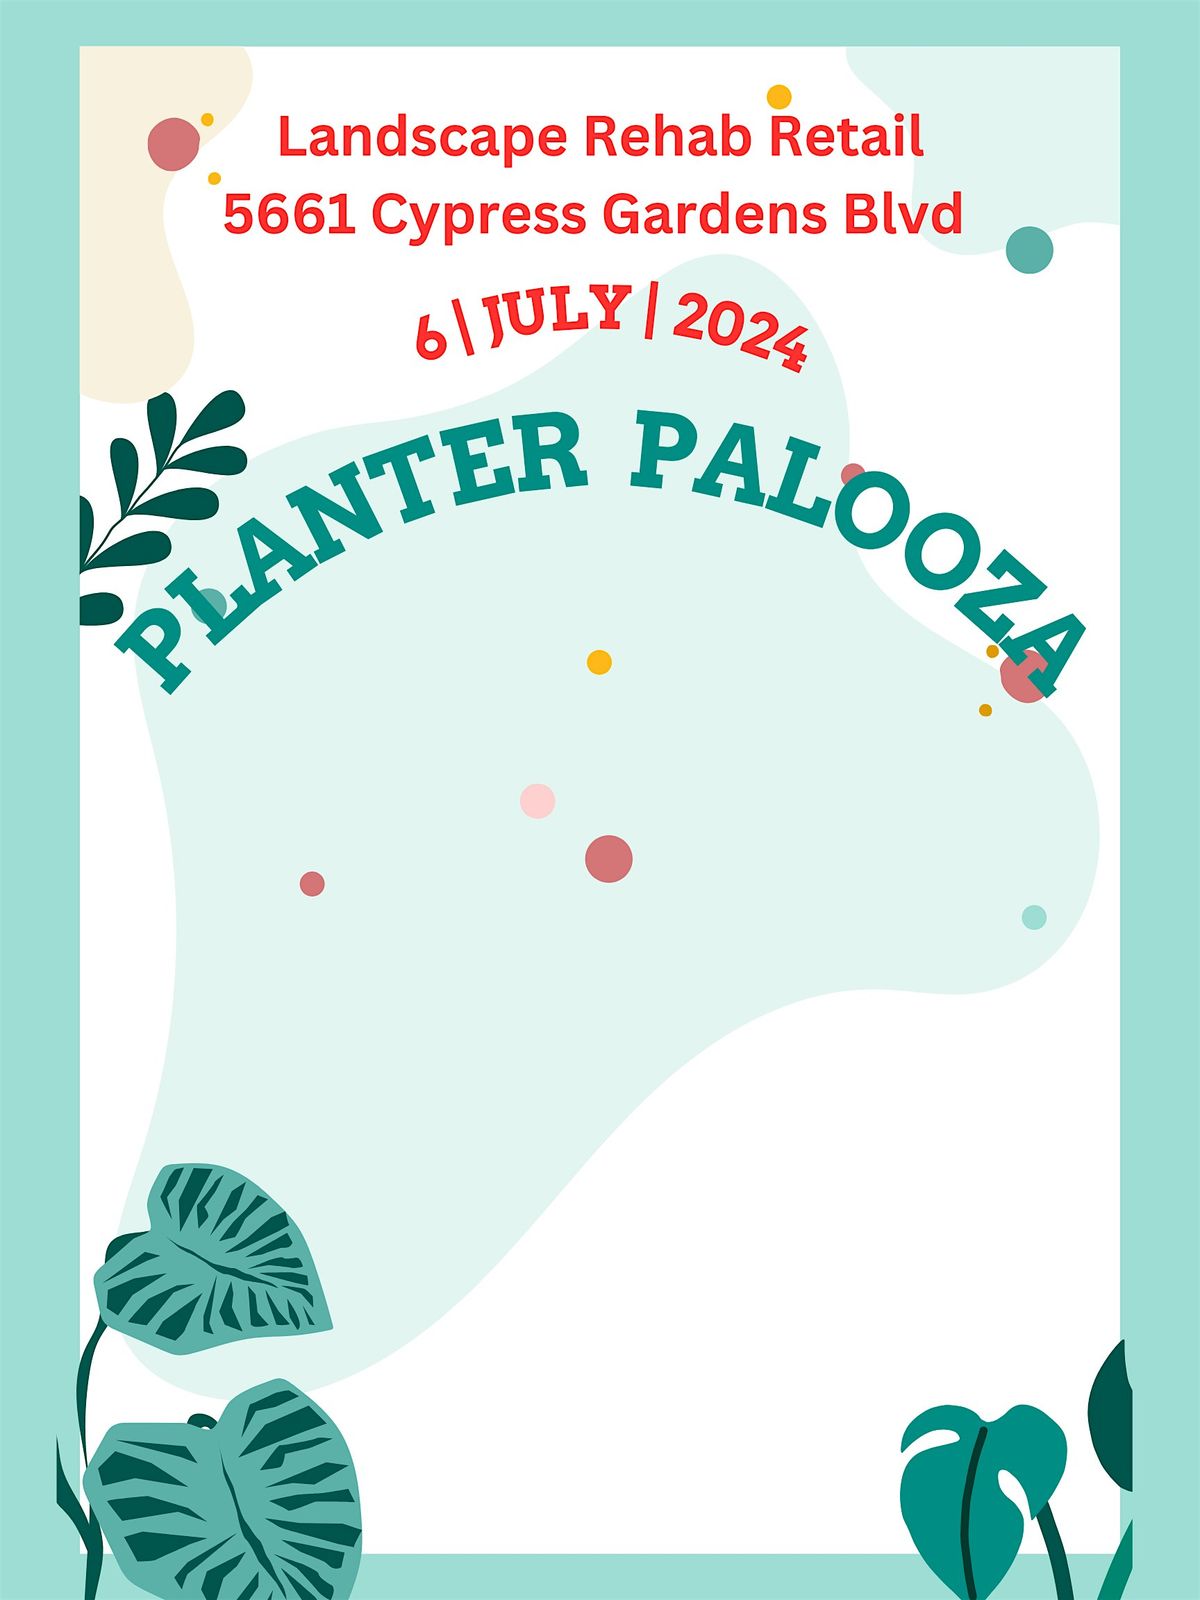 FOURTH OF JULY: PLANTER PALOOZA